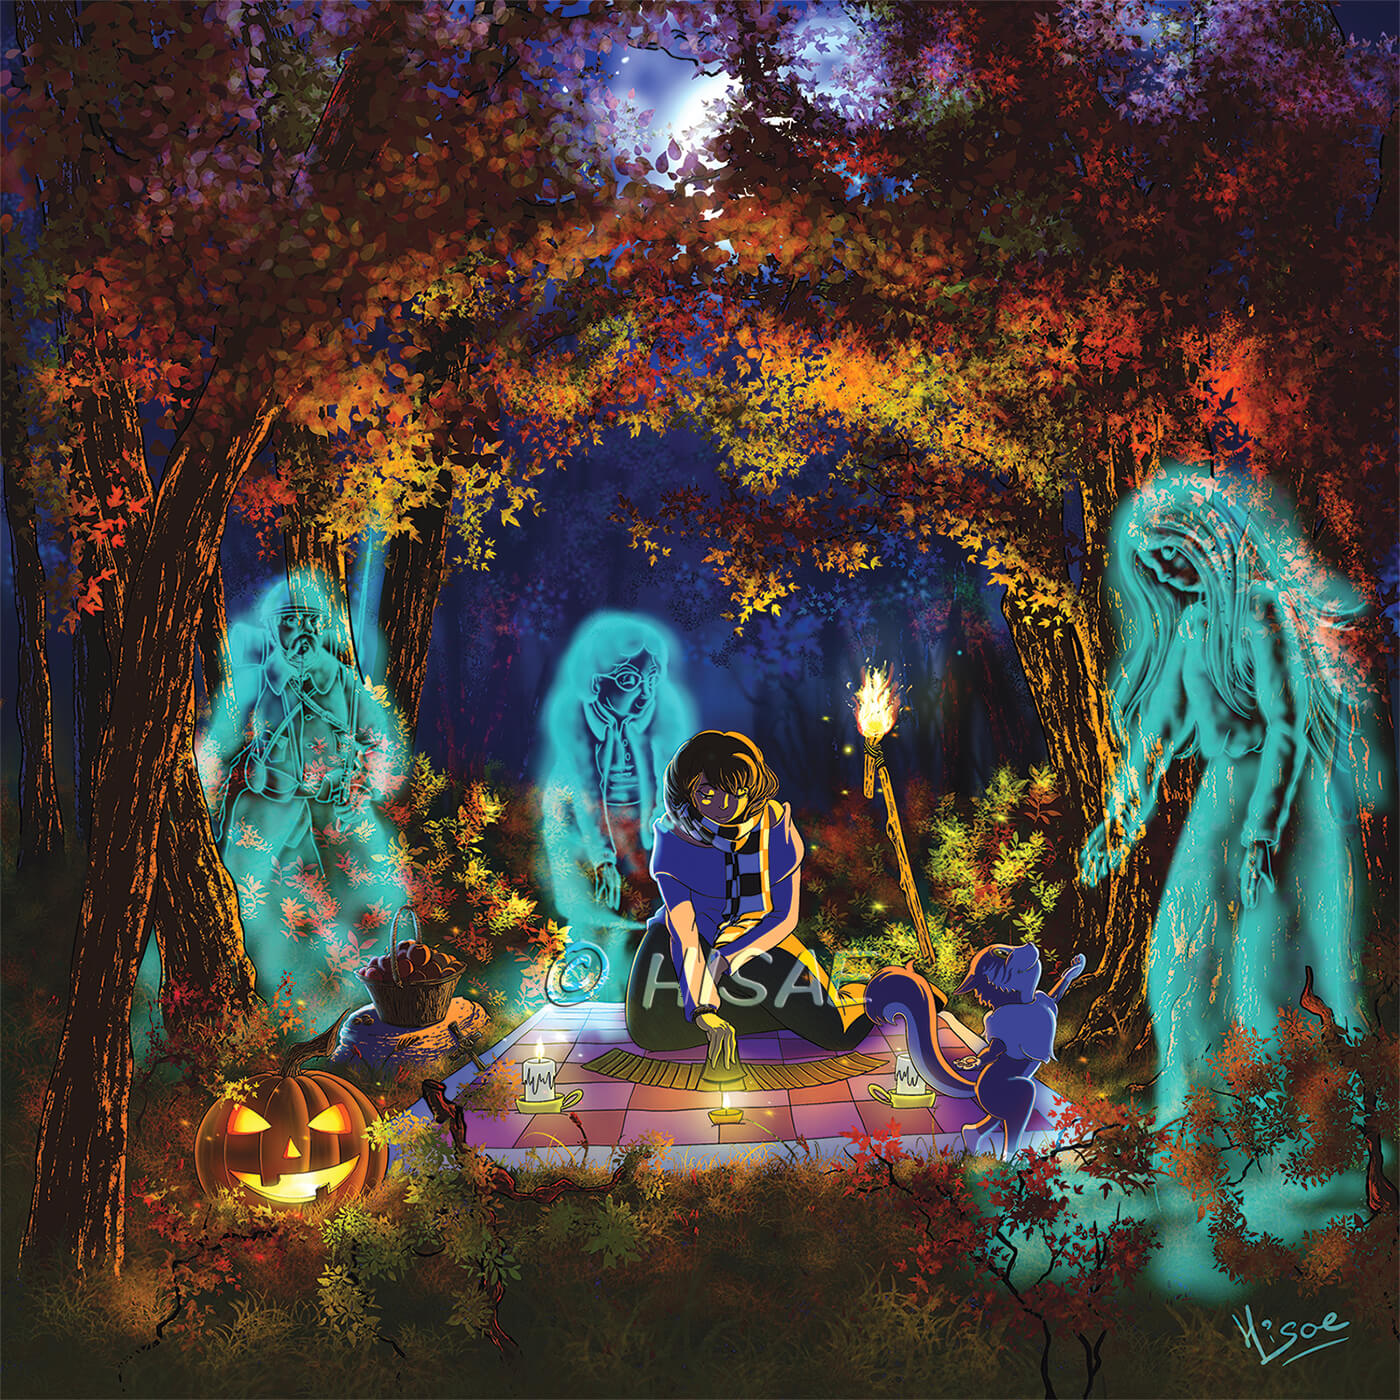 Dessin numérique de Samhain la fête païenne et celtique d'automne qui correspond à Halloween représentant une femme dans une forêt qui fait de la divination en tirant les carte près d'une torche, un chat qui accueille les esprits près d'une corbeille de fruits et d'une citrouille façon Jack O' Lantern ©Hisae illustrations